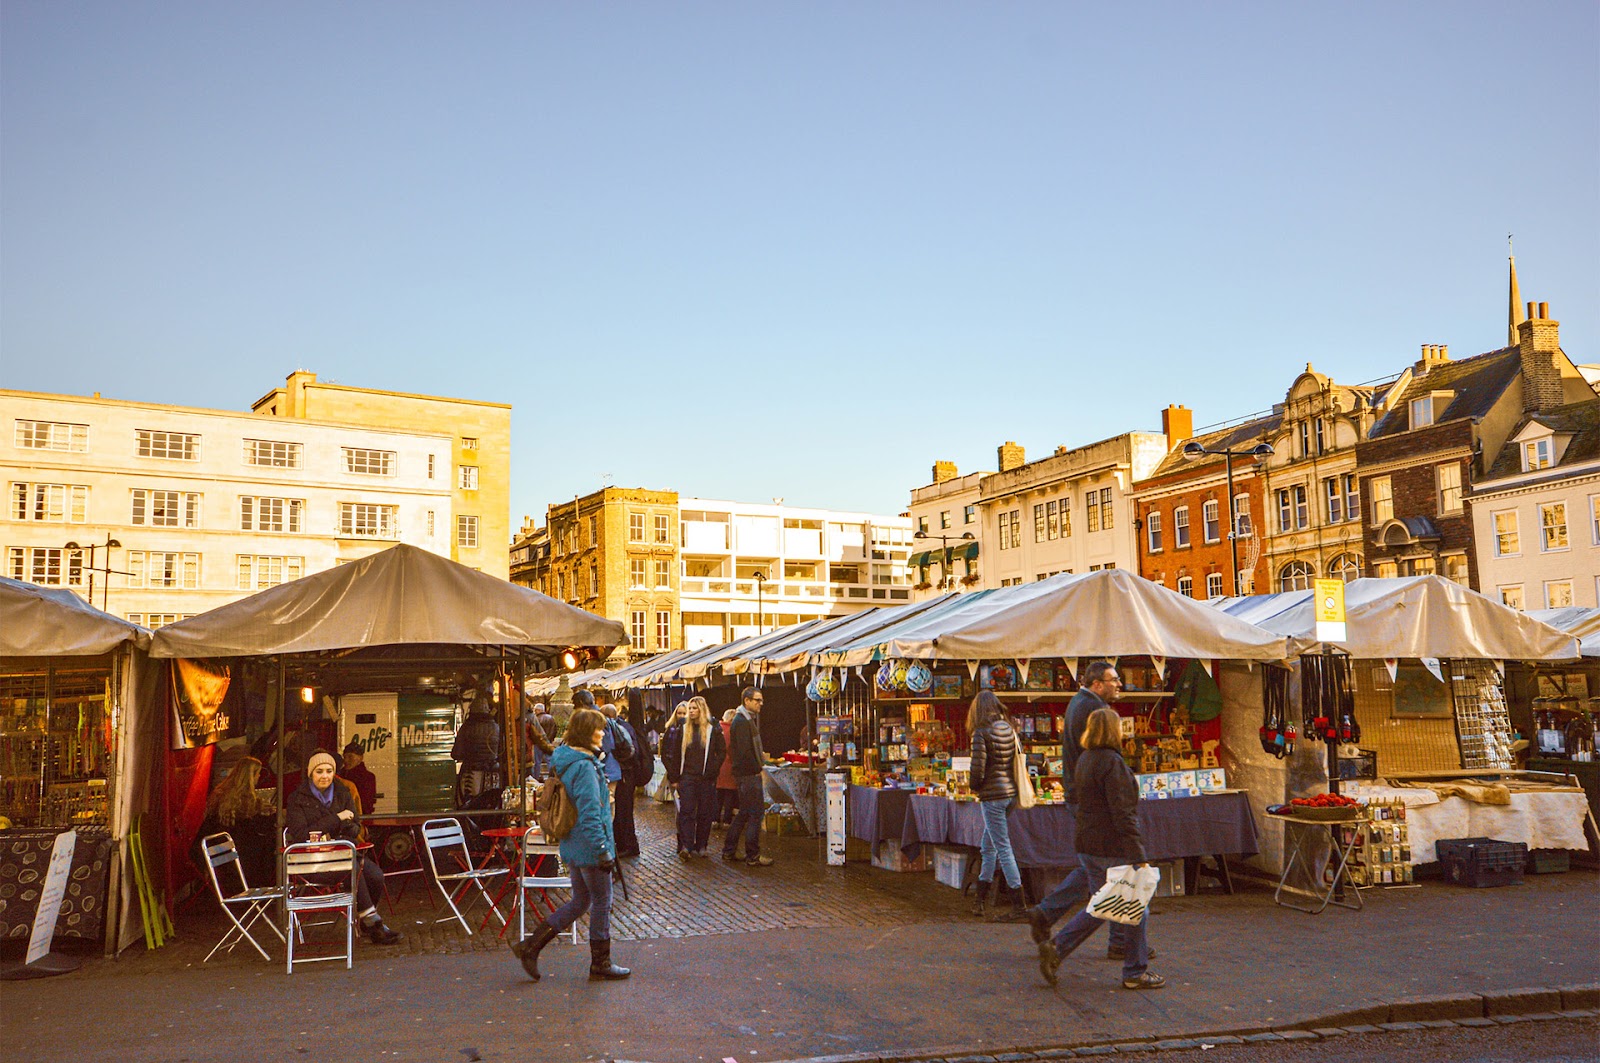 Market Square - Cambridge